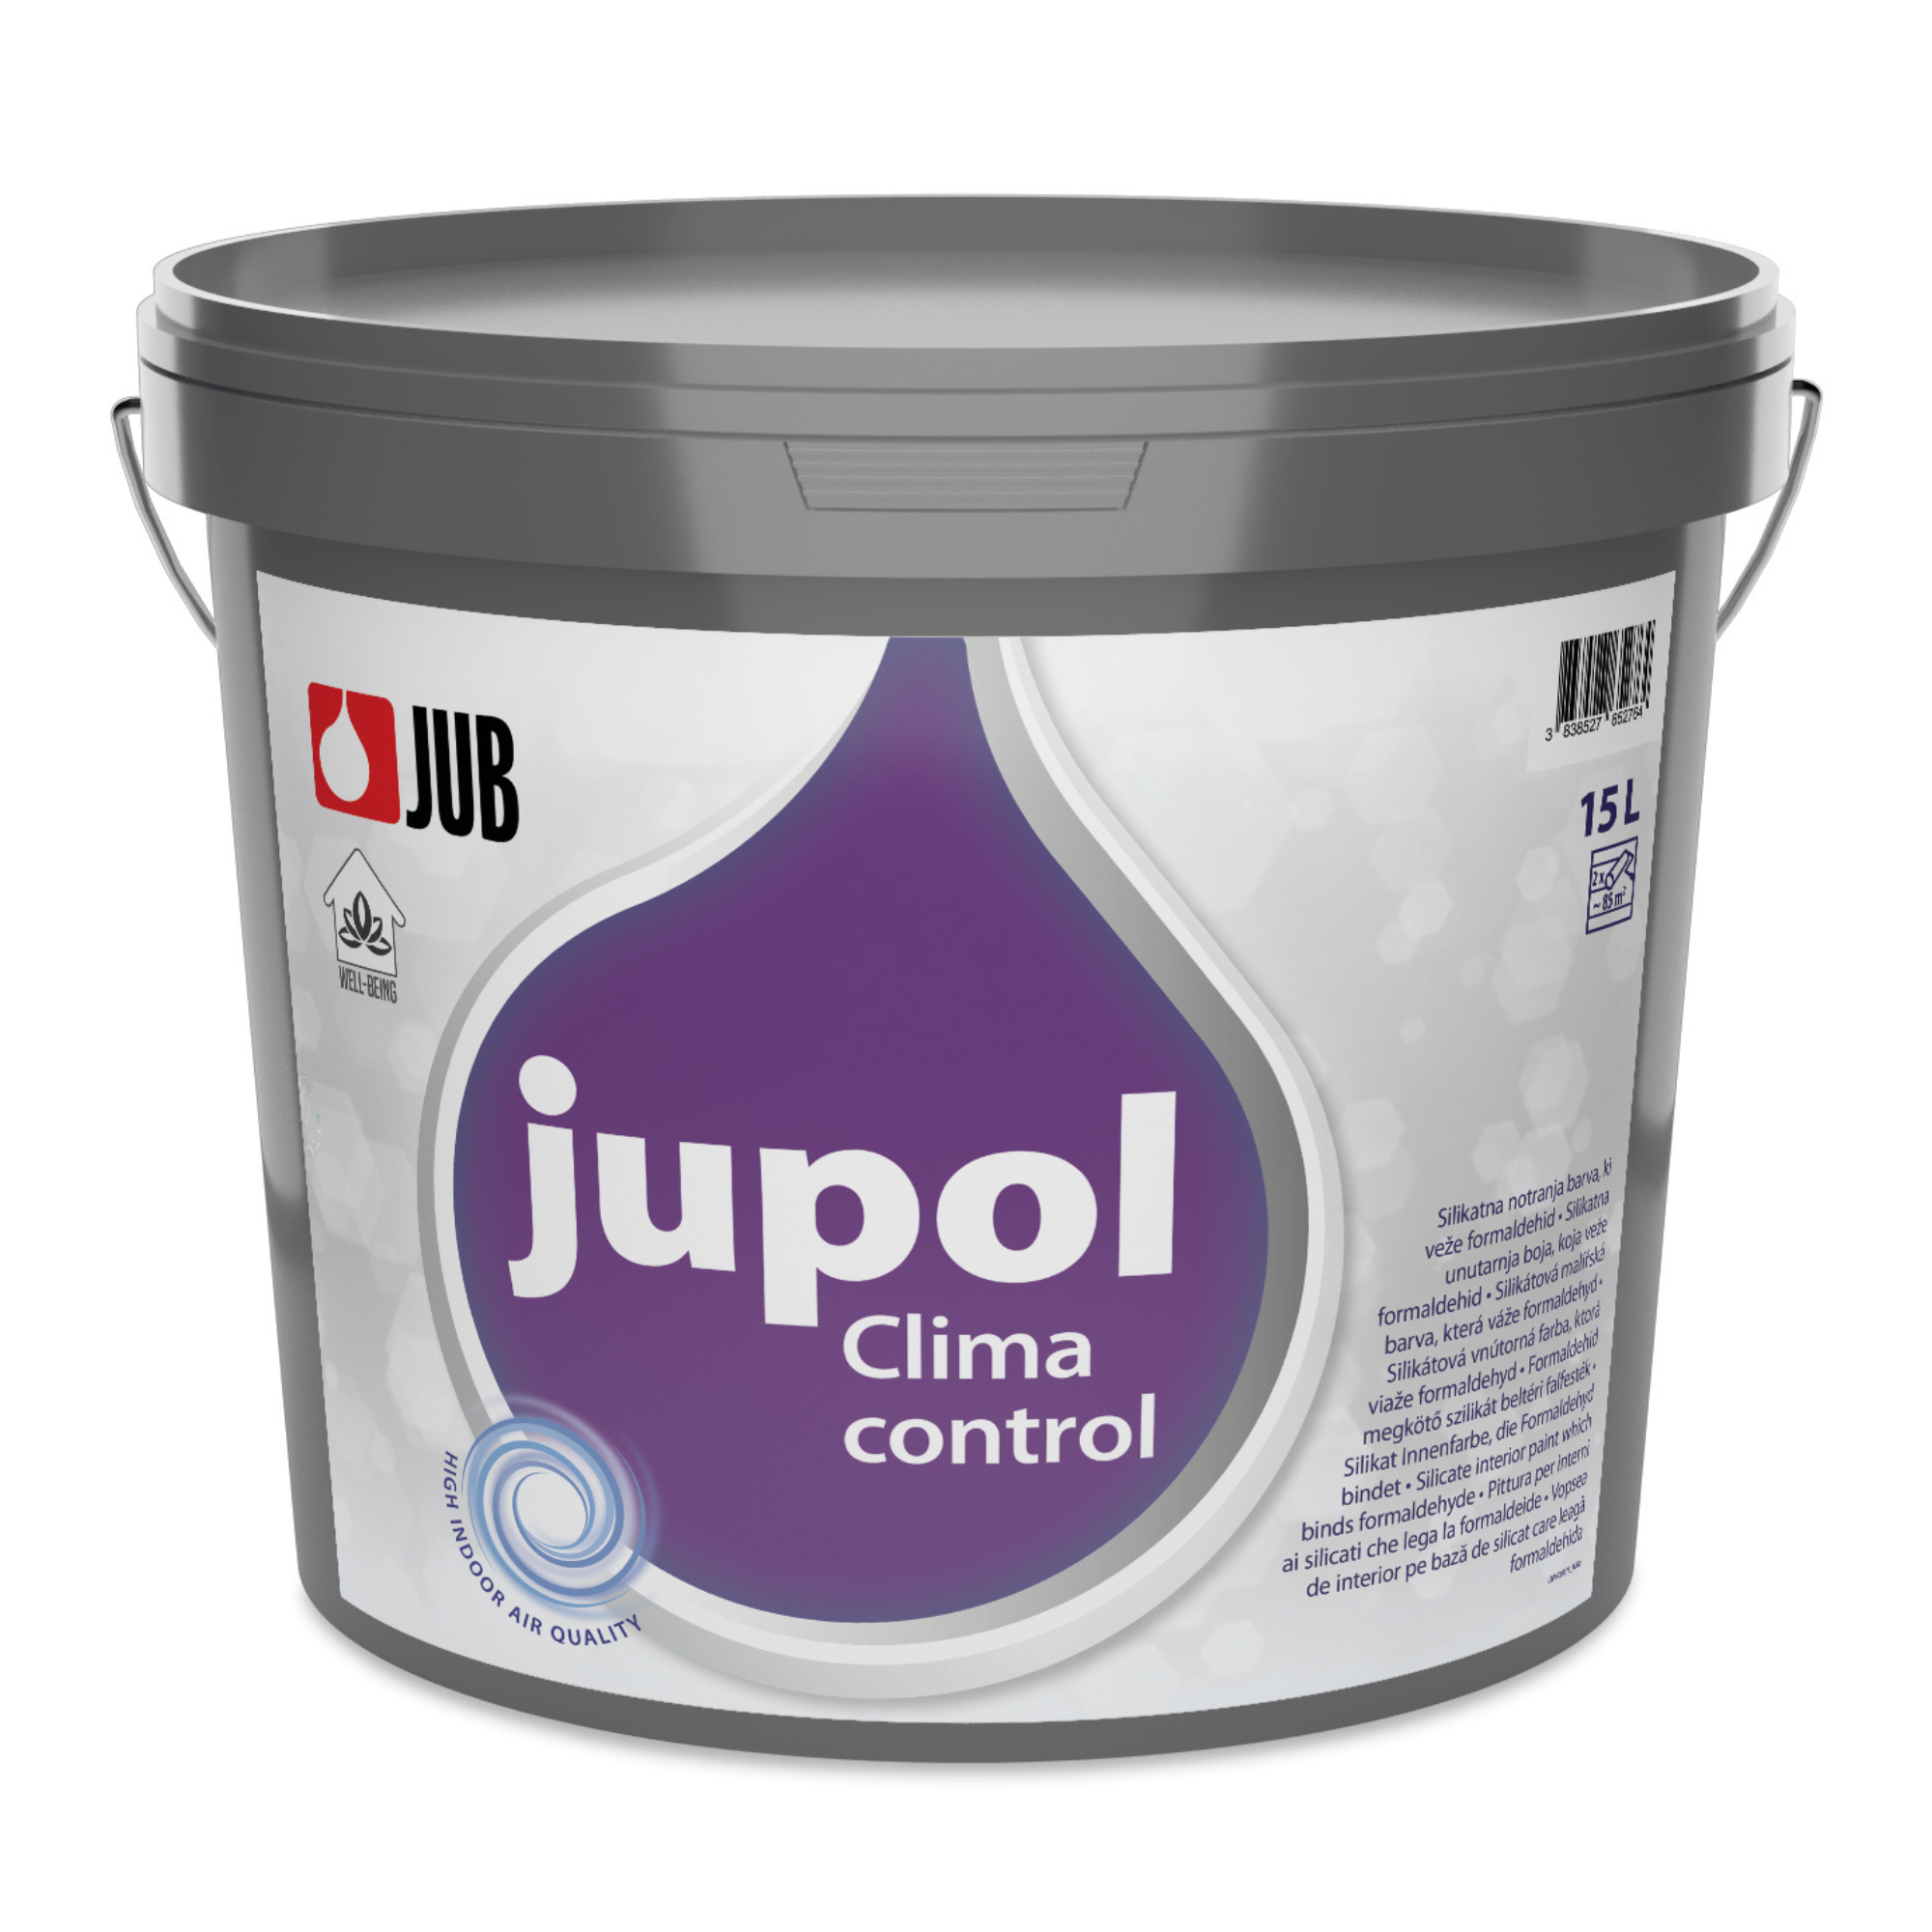 JUB JUPOL Clima control silikátová vnútorná farba viažuca formaldehyd 5 l